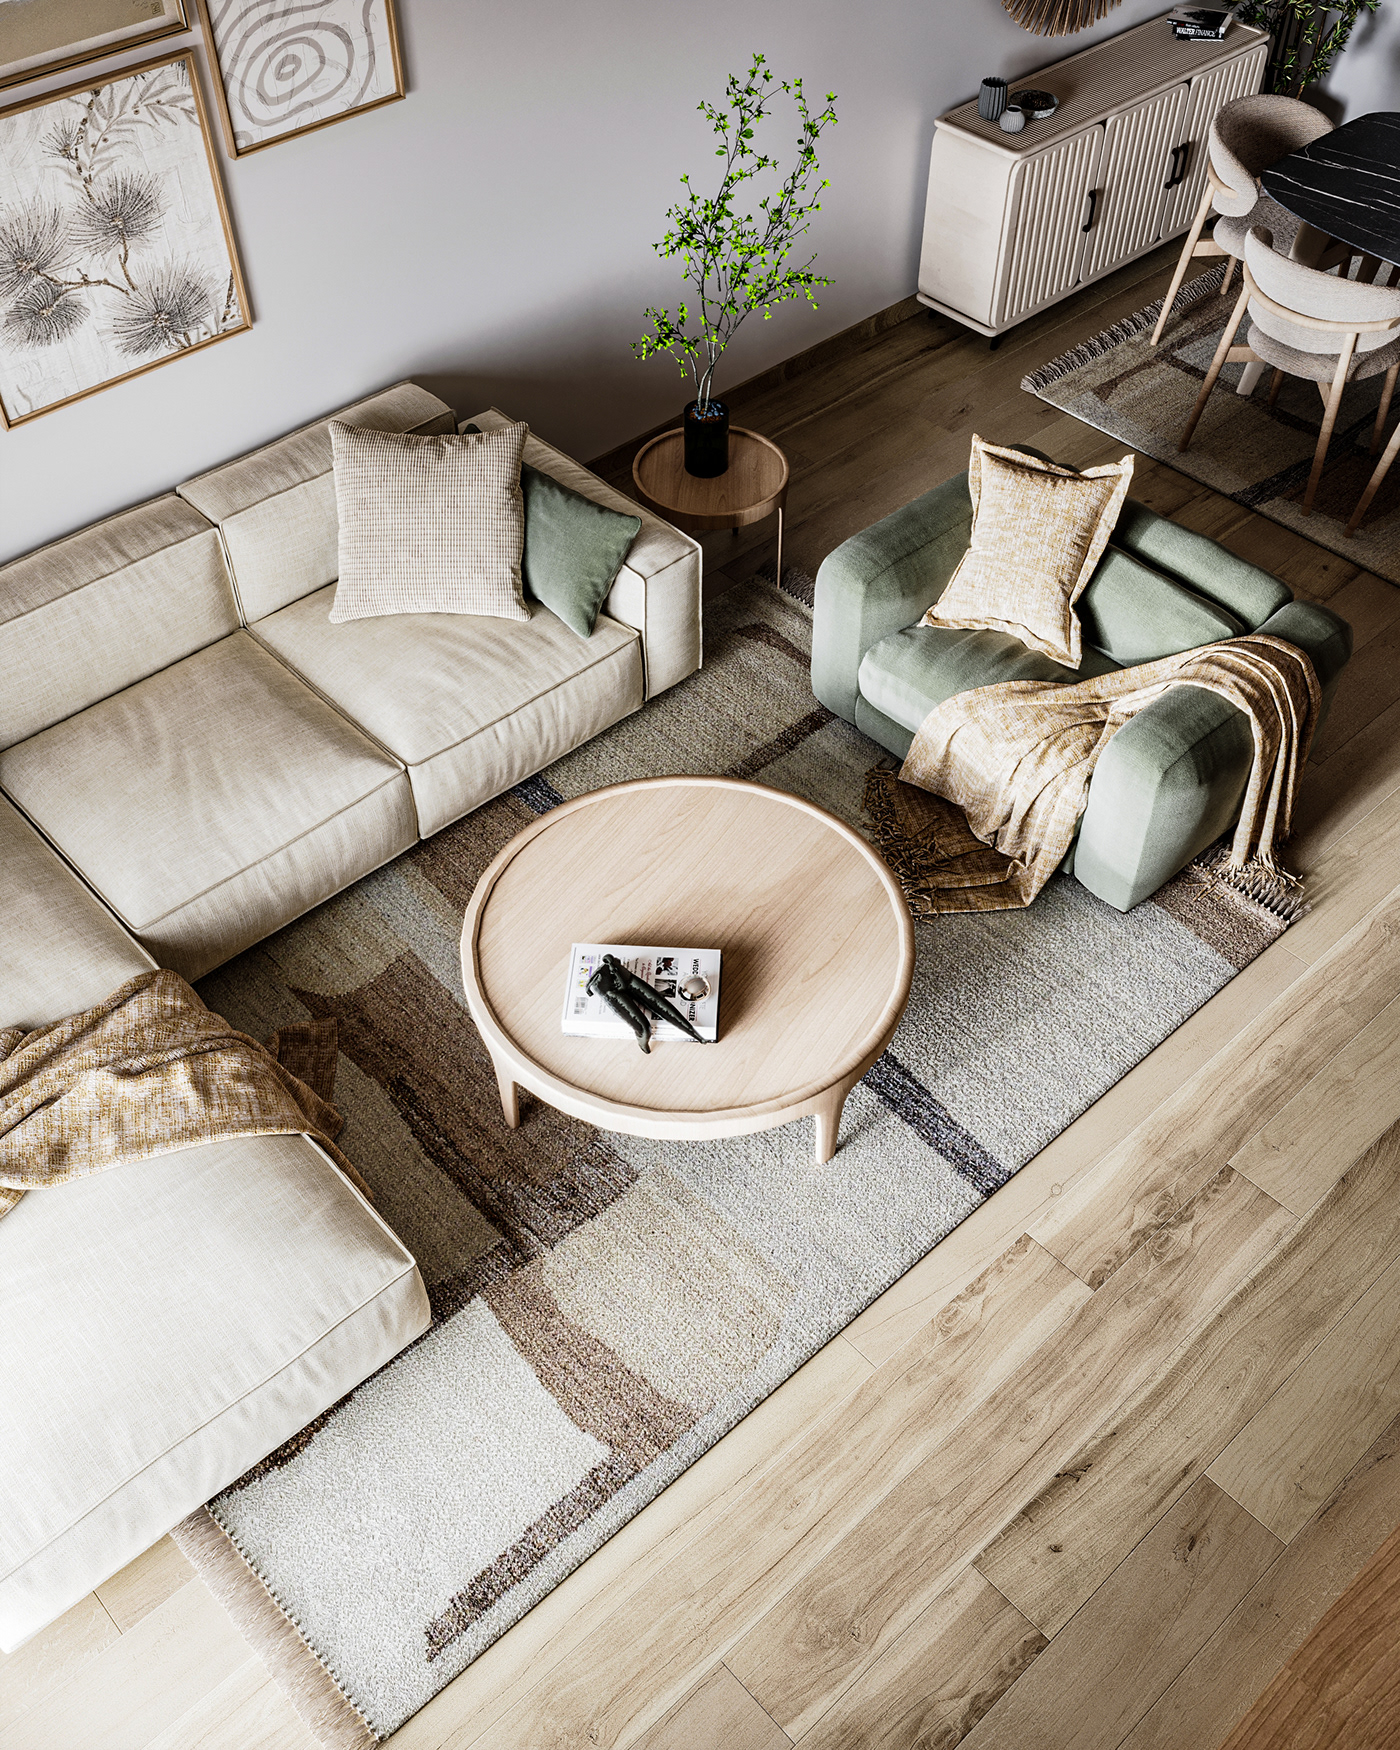 furniture interior design  visualization architecture bohemian boho style 3ds max corona Render home decor